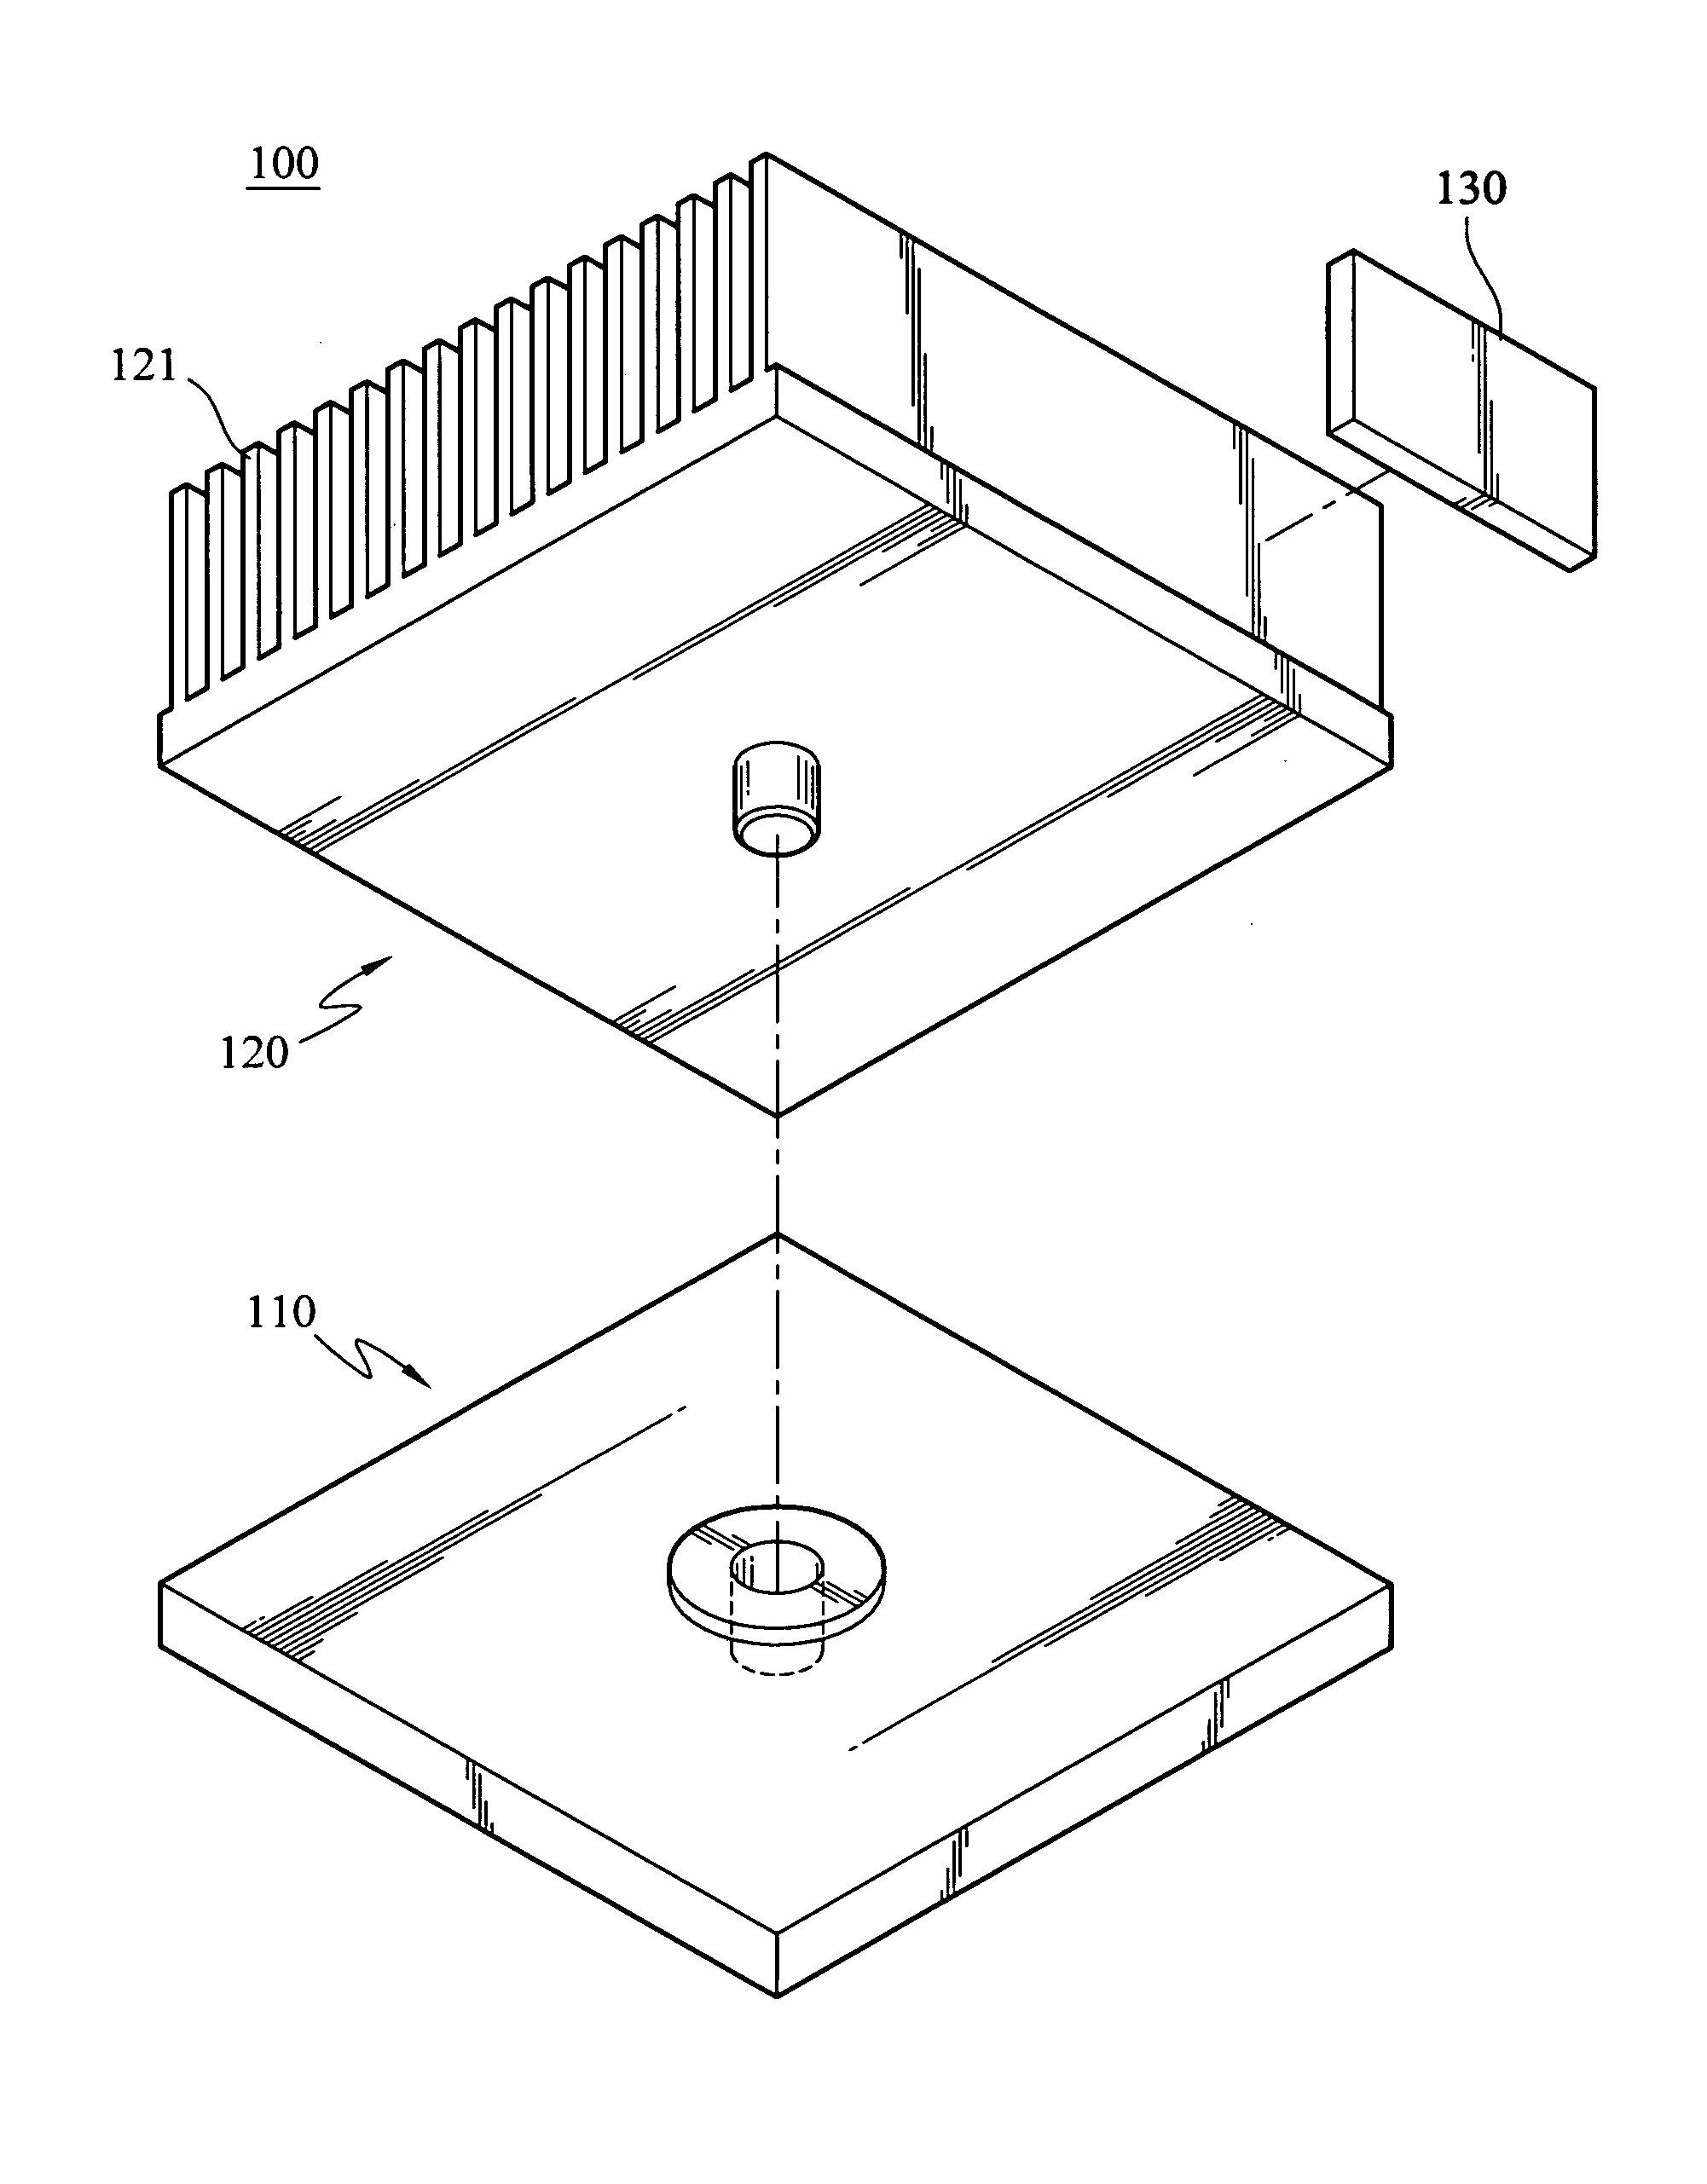 Heat sink structure